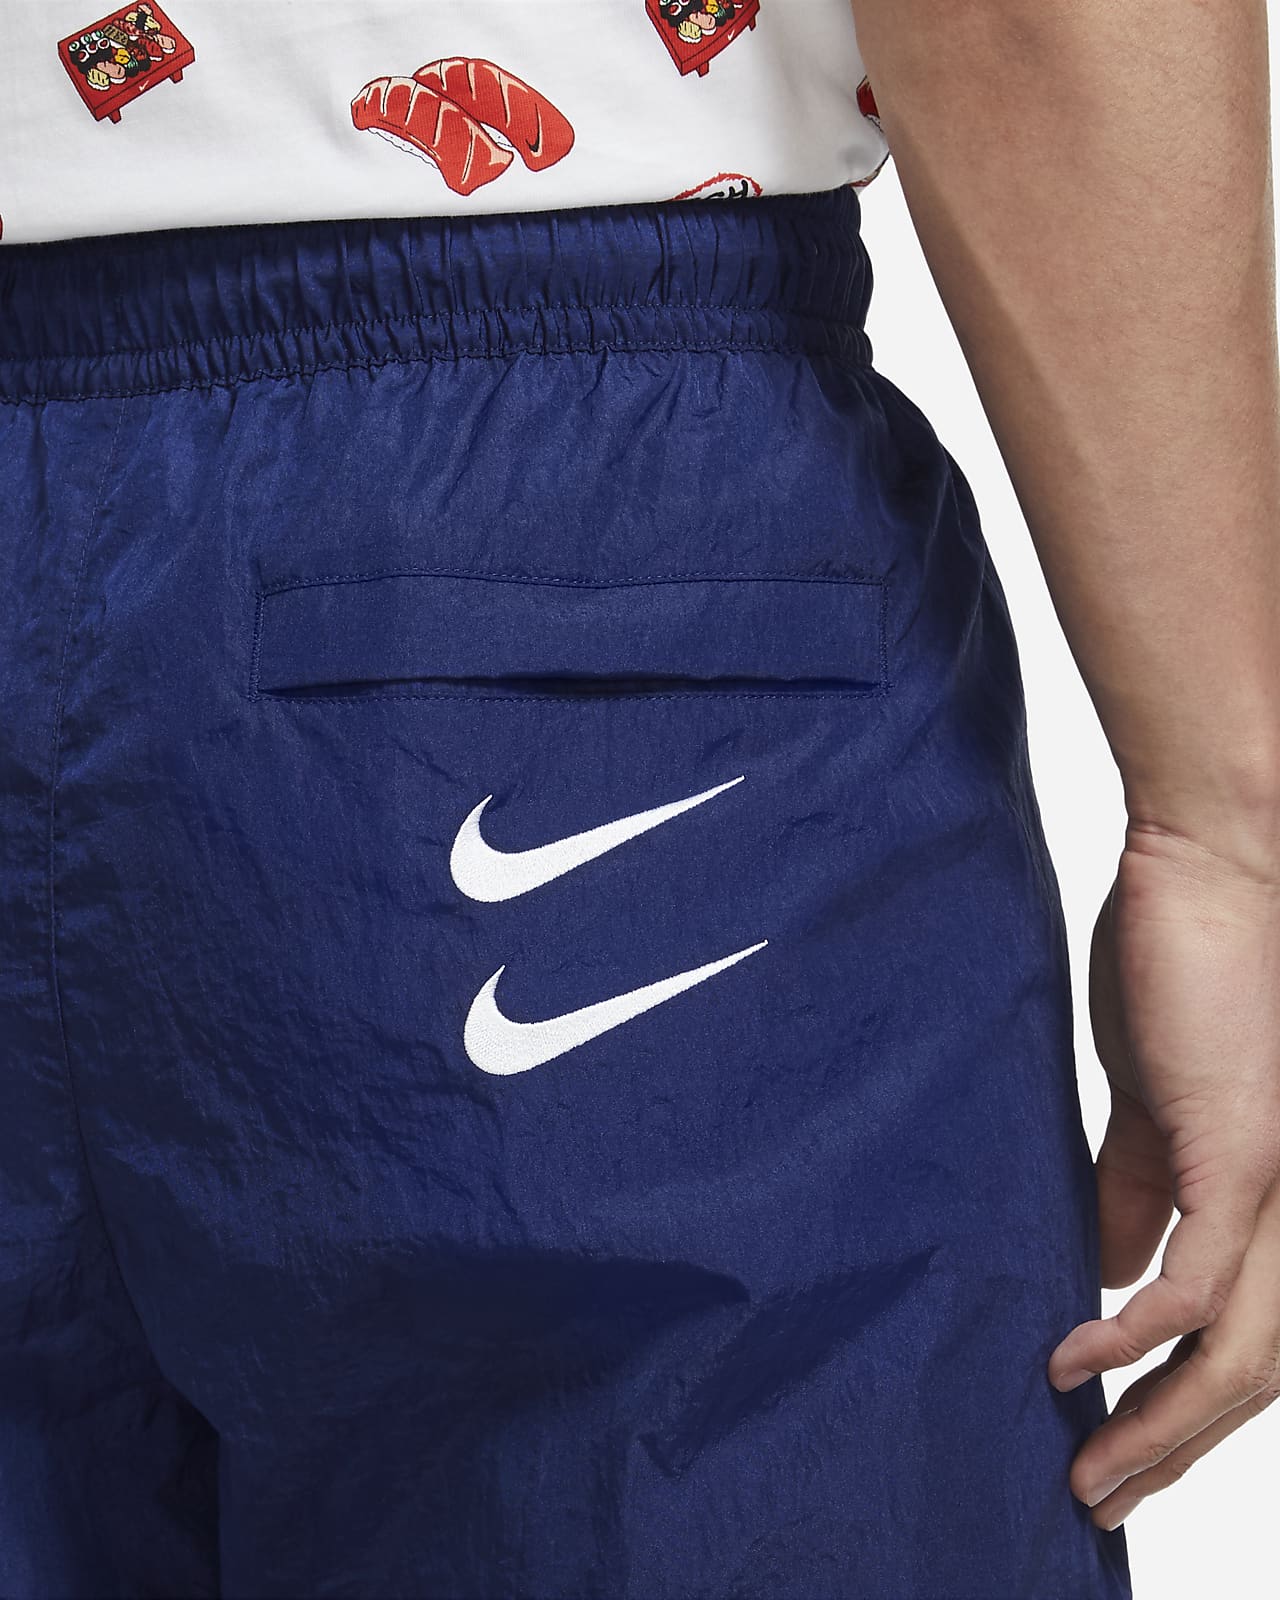 Men's Nike Sportswear Swoosh Woven Jogger Pants